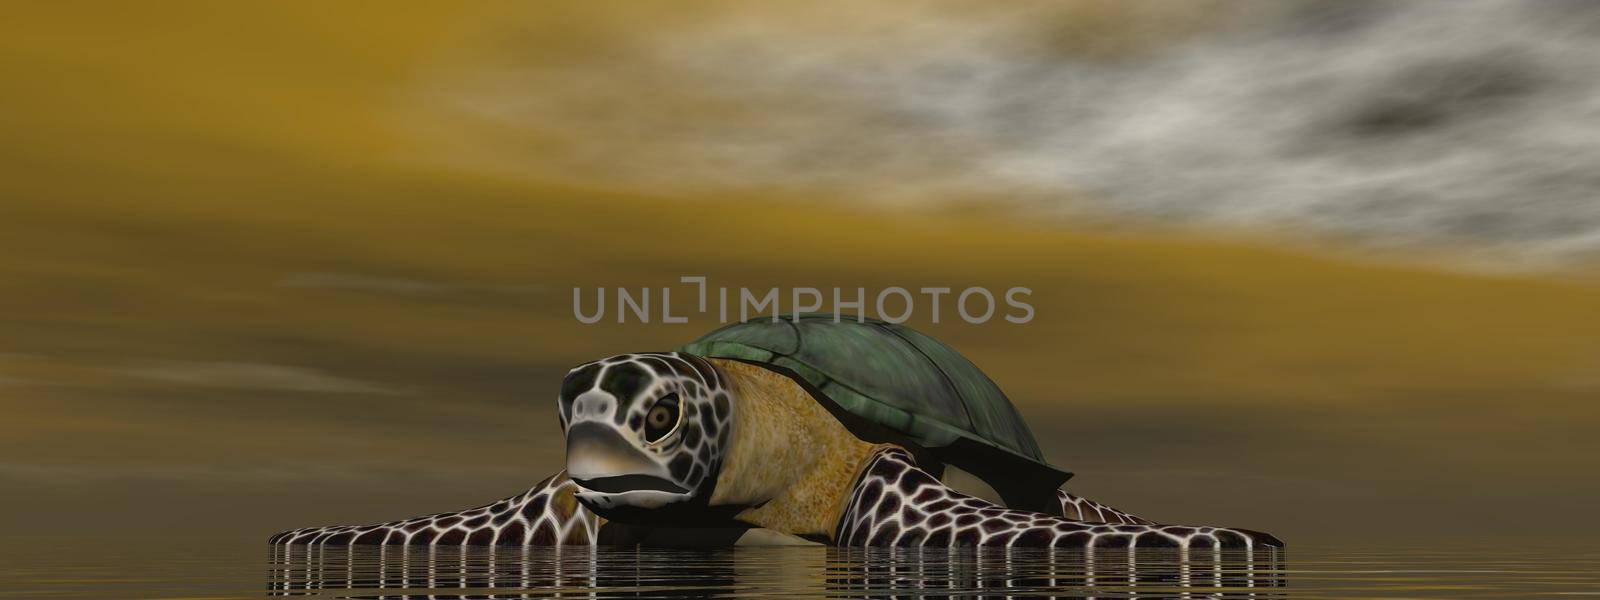 brown turtle in the ocean - 3d rendering by mariephotos